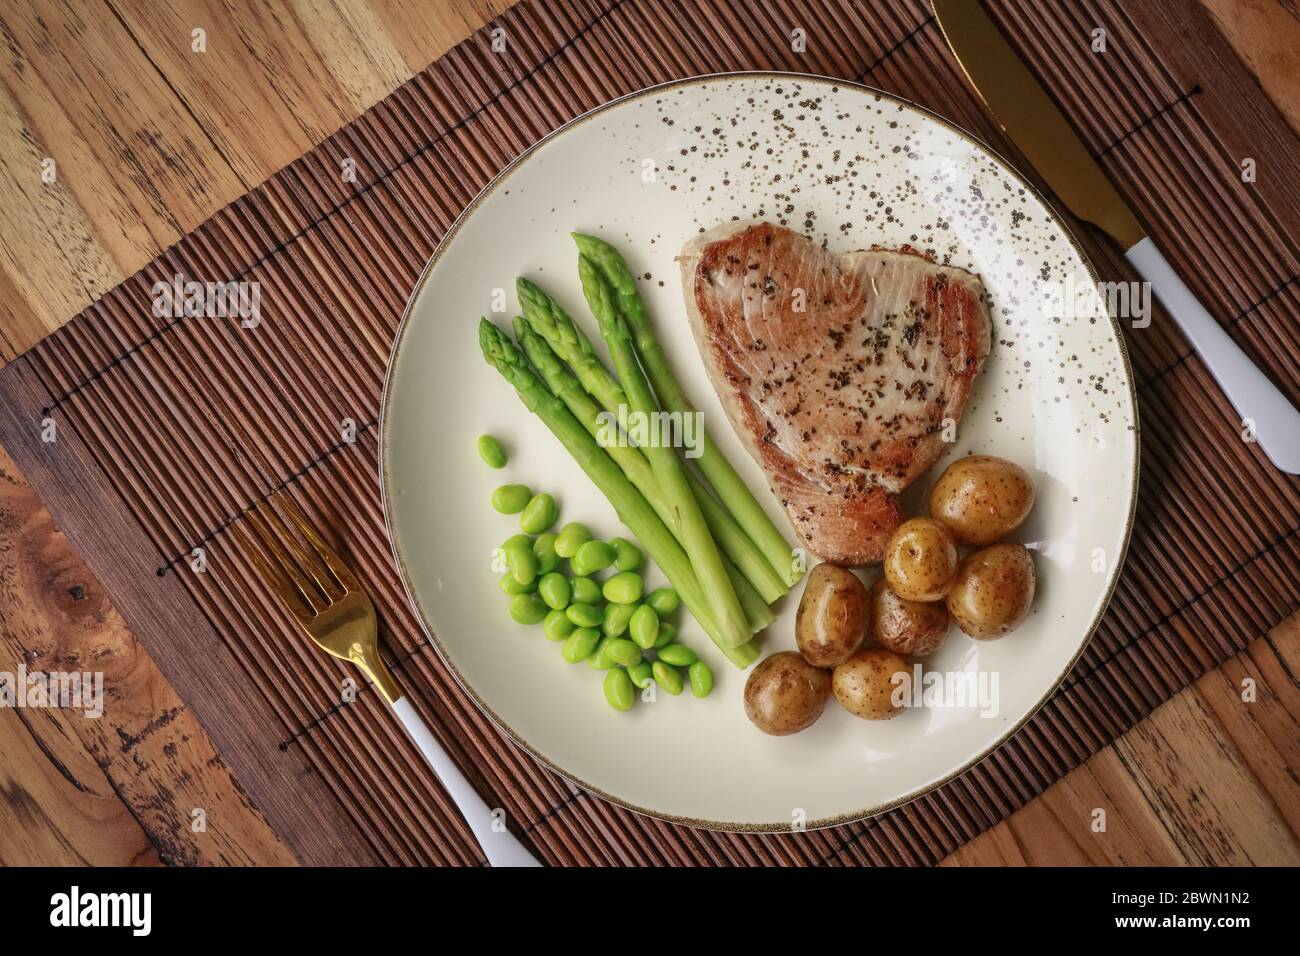 Gegrilltes Thunfischsteak mit Spargel, gebratenen Babykartoffeln, Edamamebohnen und Sauce Hollandaise auf einem Teller, Draufsicht Stockfoto